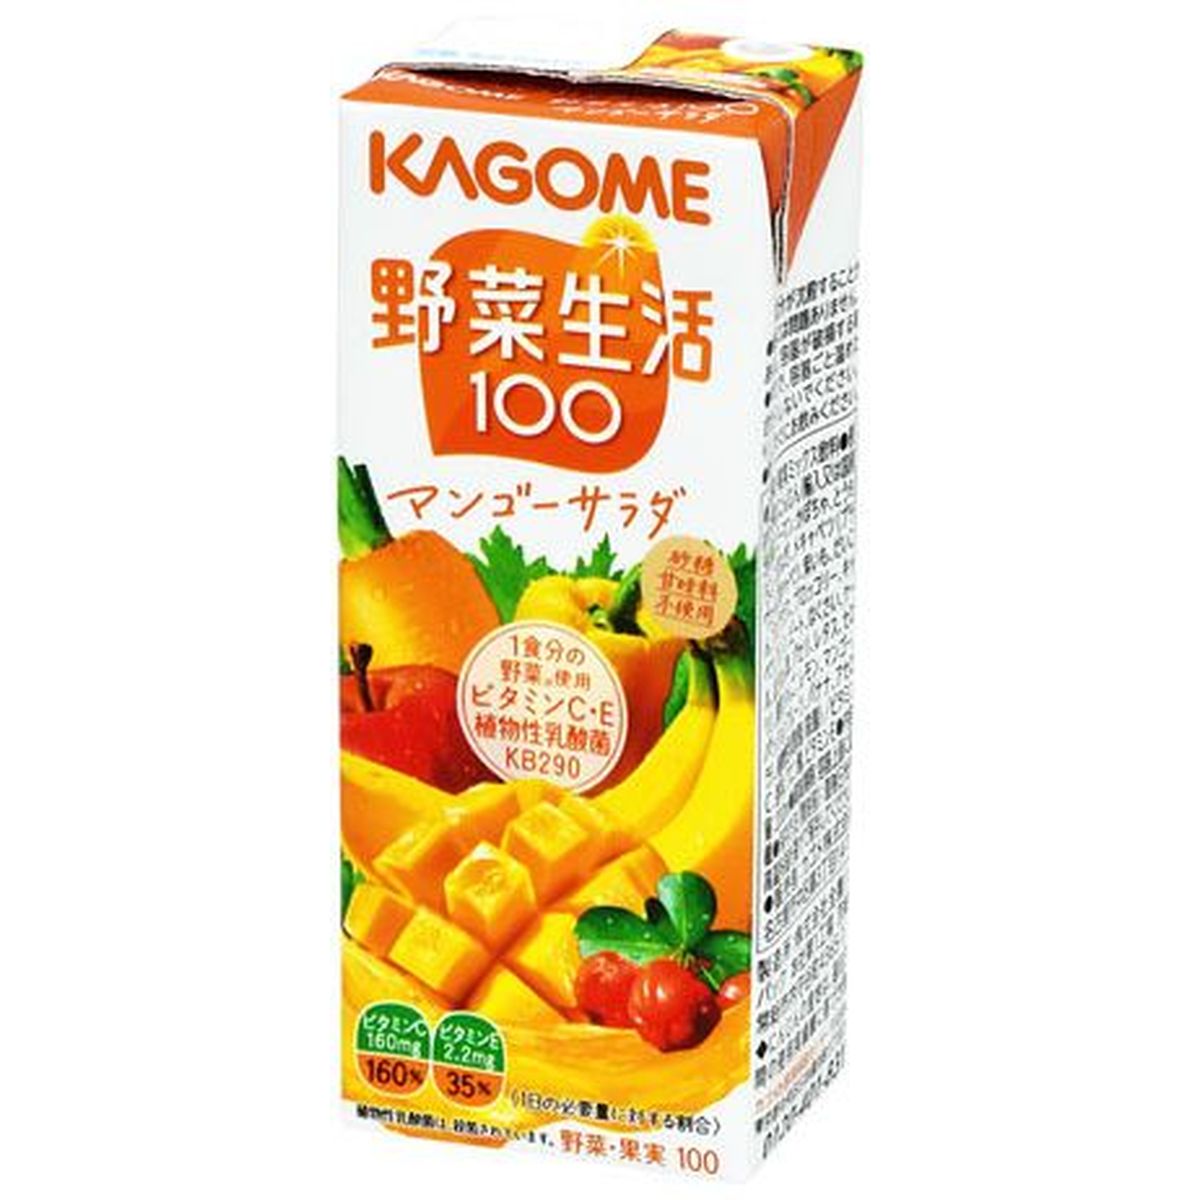 【12個入リ】カゴメ 野菜生活100マンゴーサラダ 200ml